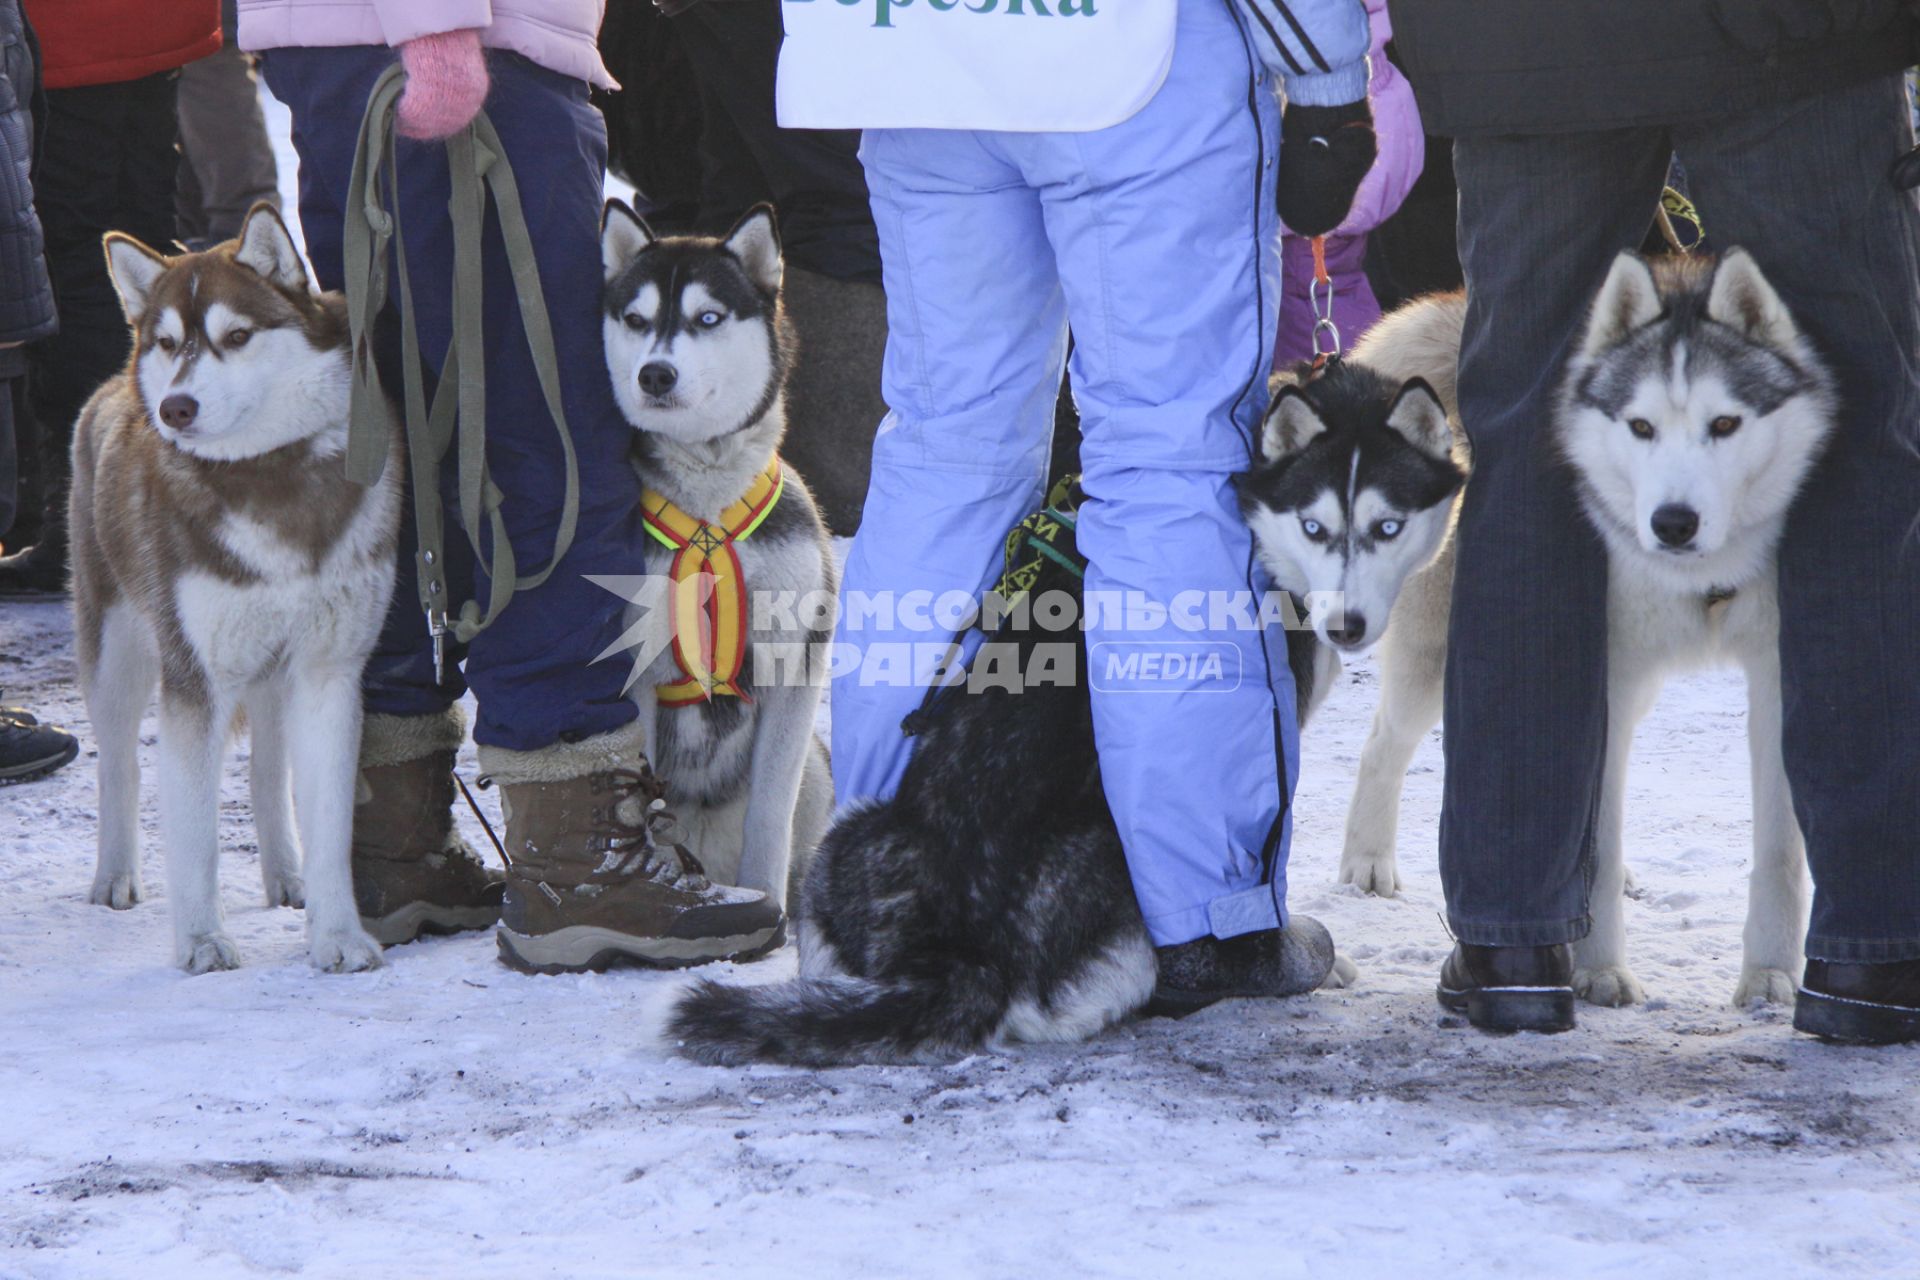 Гонки на собачьих упряжках в Барнауле. На снимке: собаки породы хаски в упряжках ждут начала соревнований.